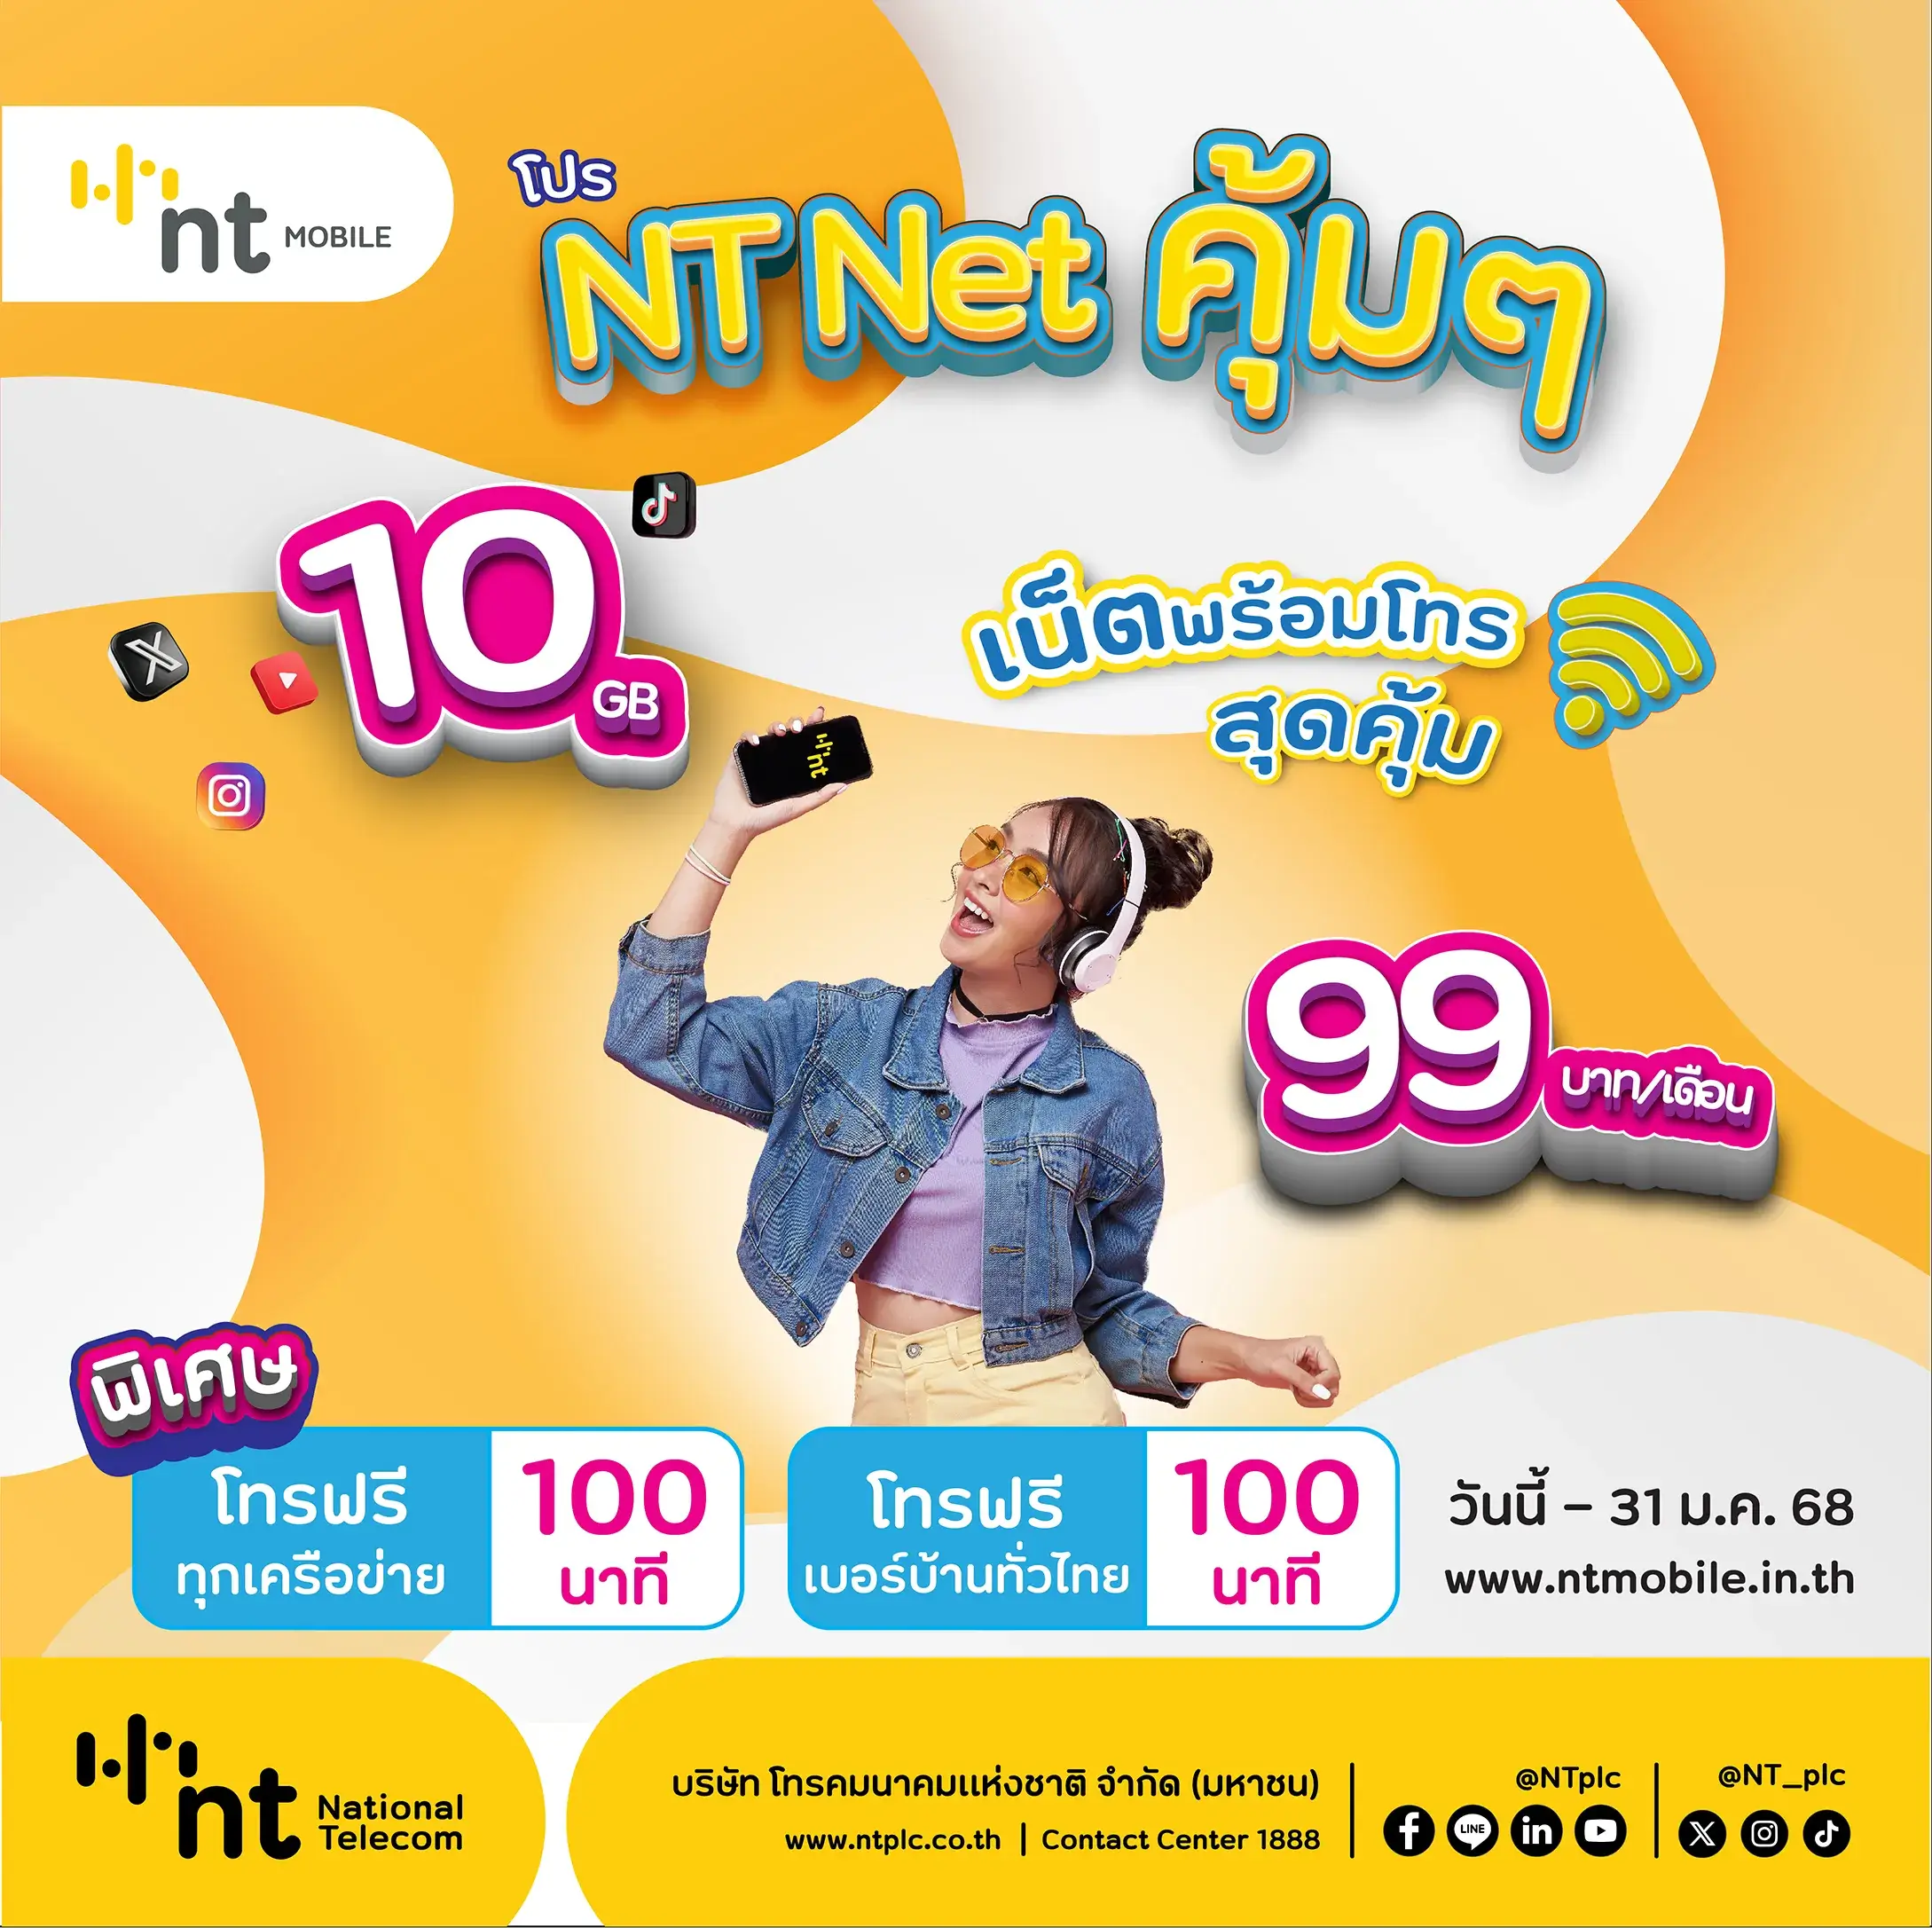 โปร NT NET คุ้มๆ เน็ตพร้อมโทร สุดคุ้ม 10 GB 99 บาท/เดือน พิเศษโทรฟรีทุกเครือข่าย 100 นาที พร้อมโทรฟรีเบอร์บ้านทั่วไทย 100 นาที